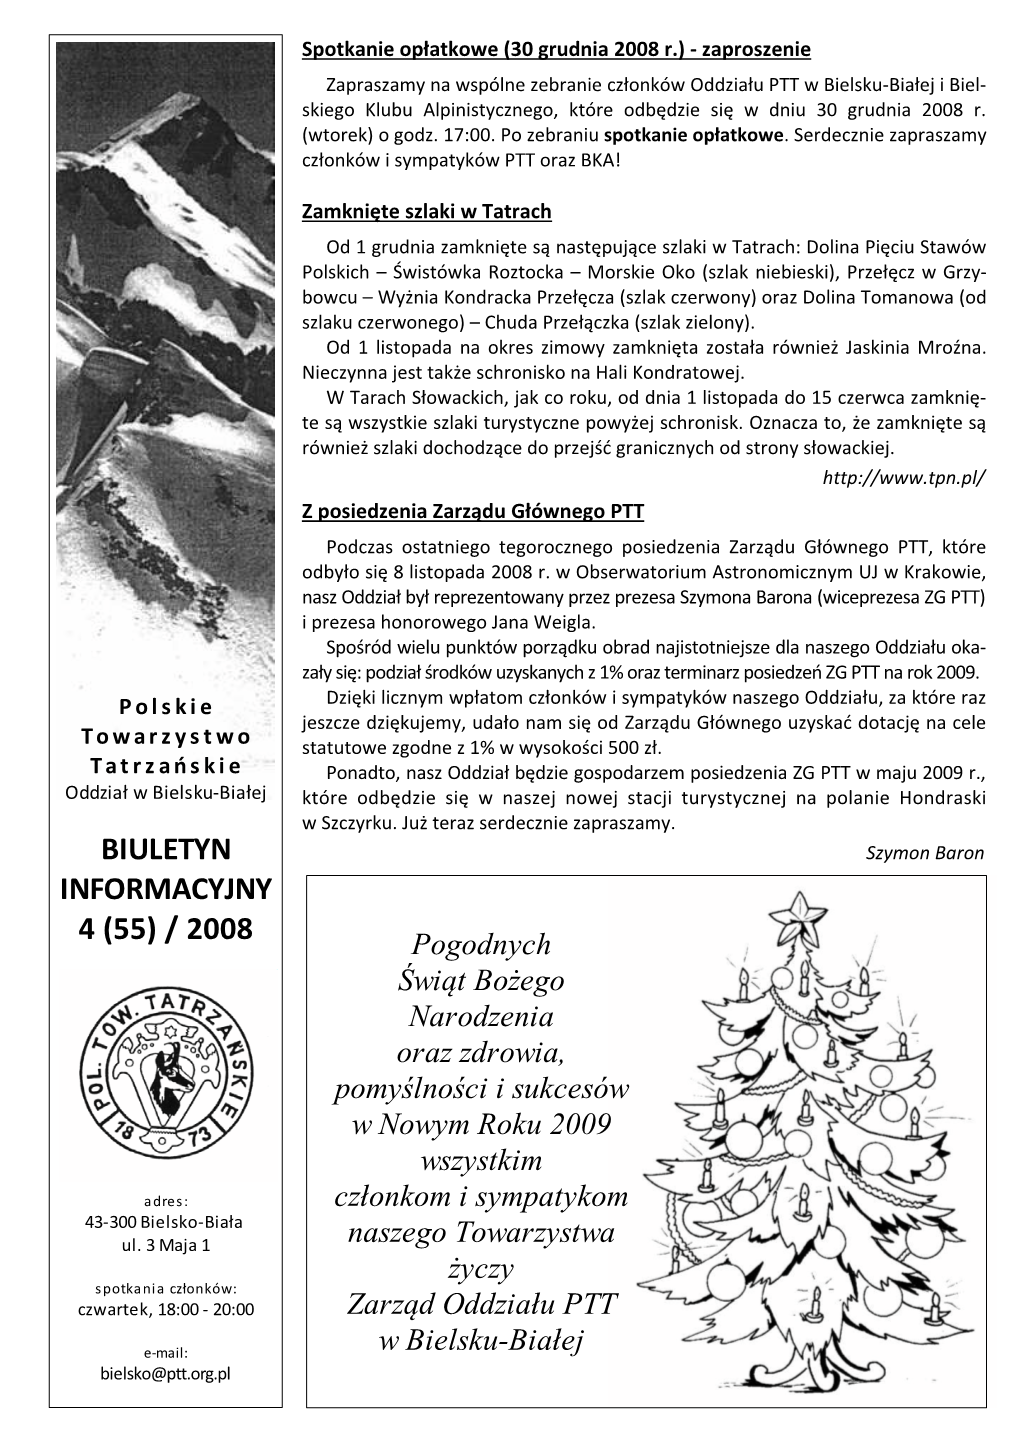 Biuletyn Informacyjny Nr 4 (55) / 2008 (Pdf – 859